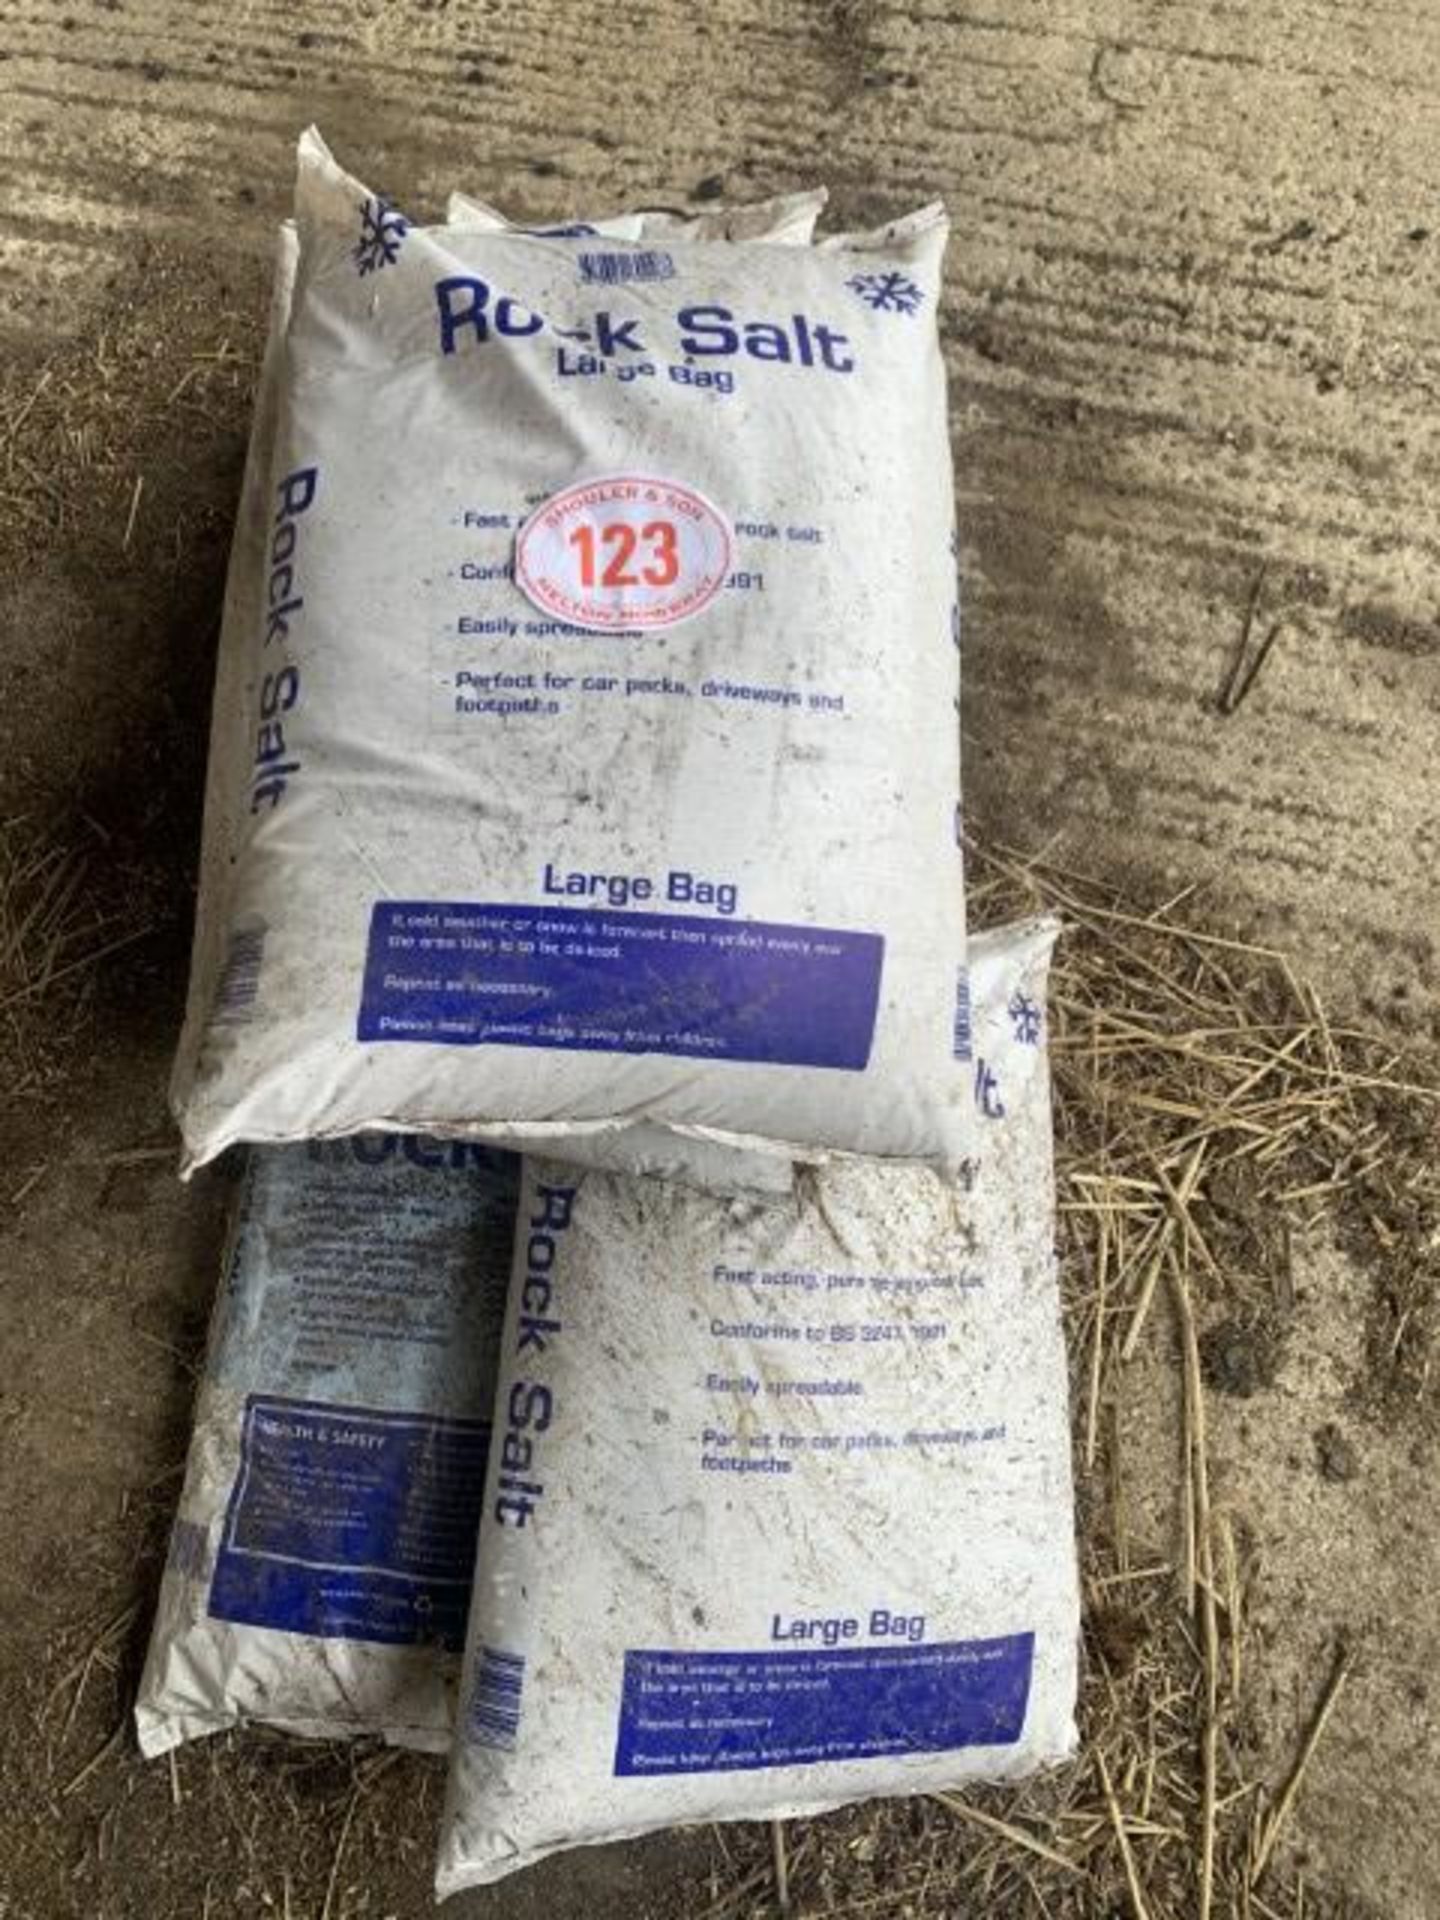 6 bags of rock salt